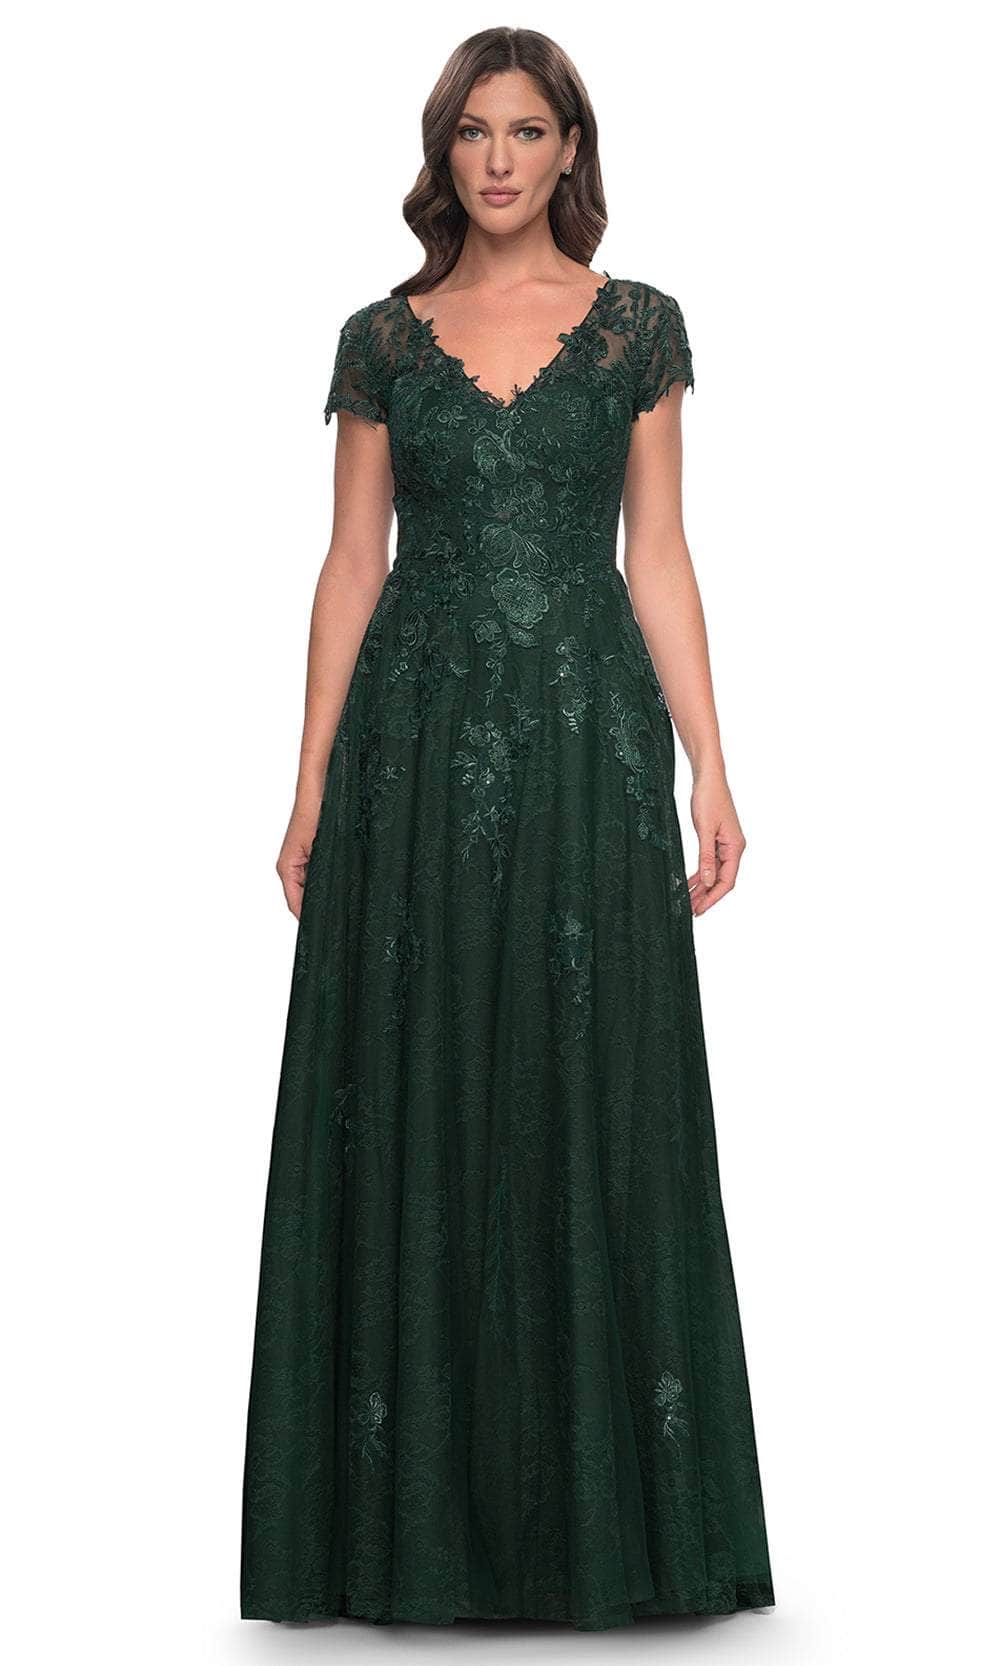 La Femme 30168 - A-Line Floral Formal Dress Evening Dresses 4 / Emerald